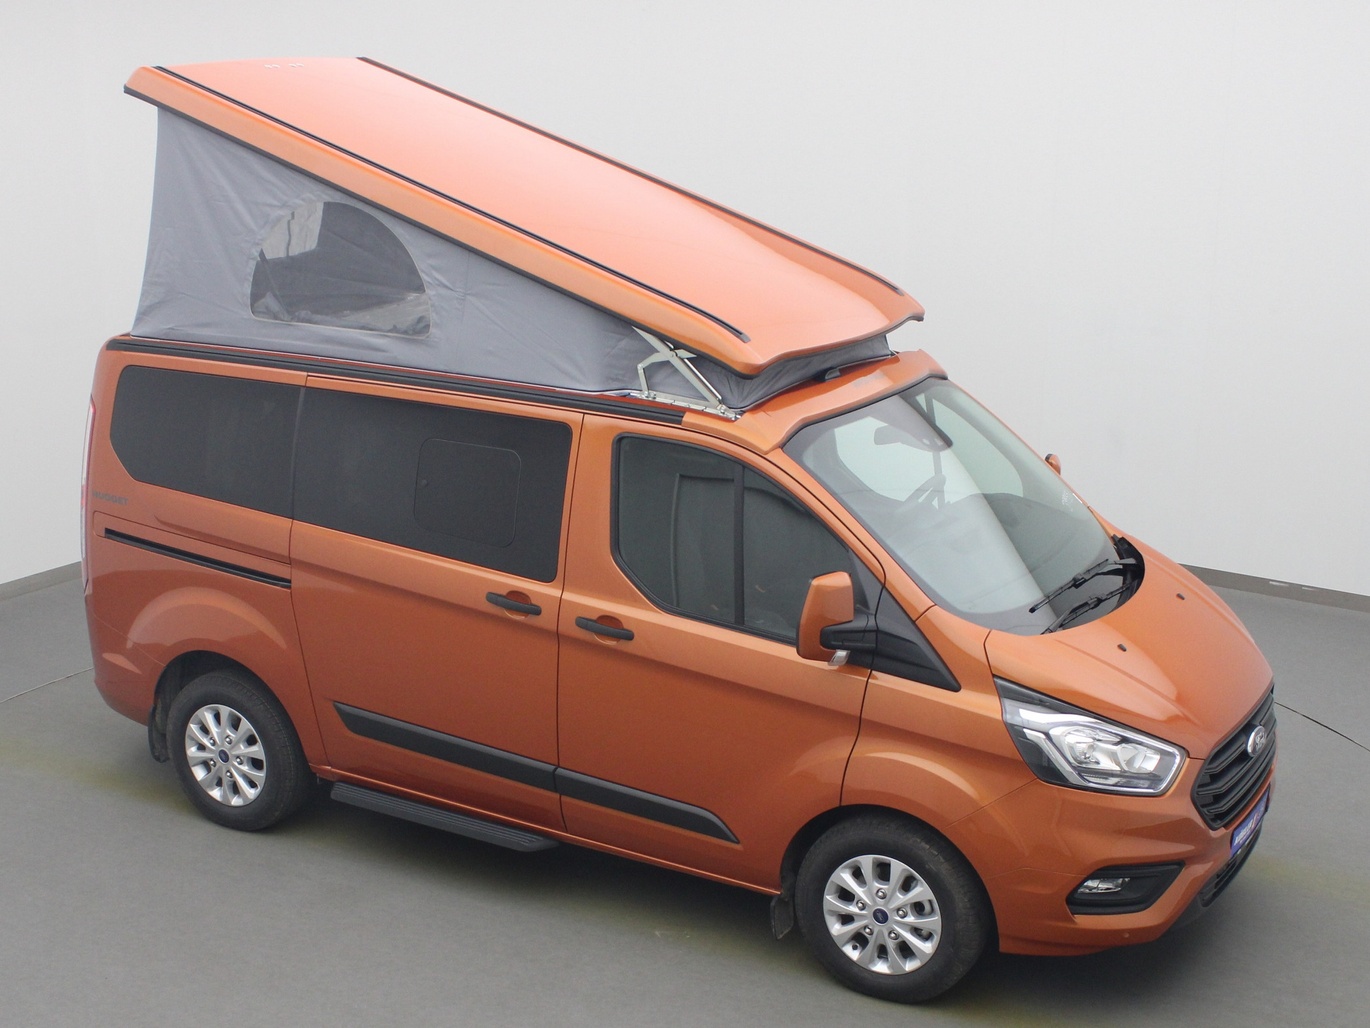  Ford Transit Nugget Aufstelldach 185PS / Sicht-P3 in Hokkaido Orange 